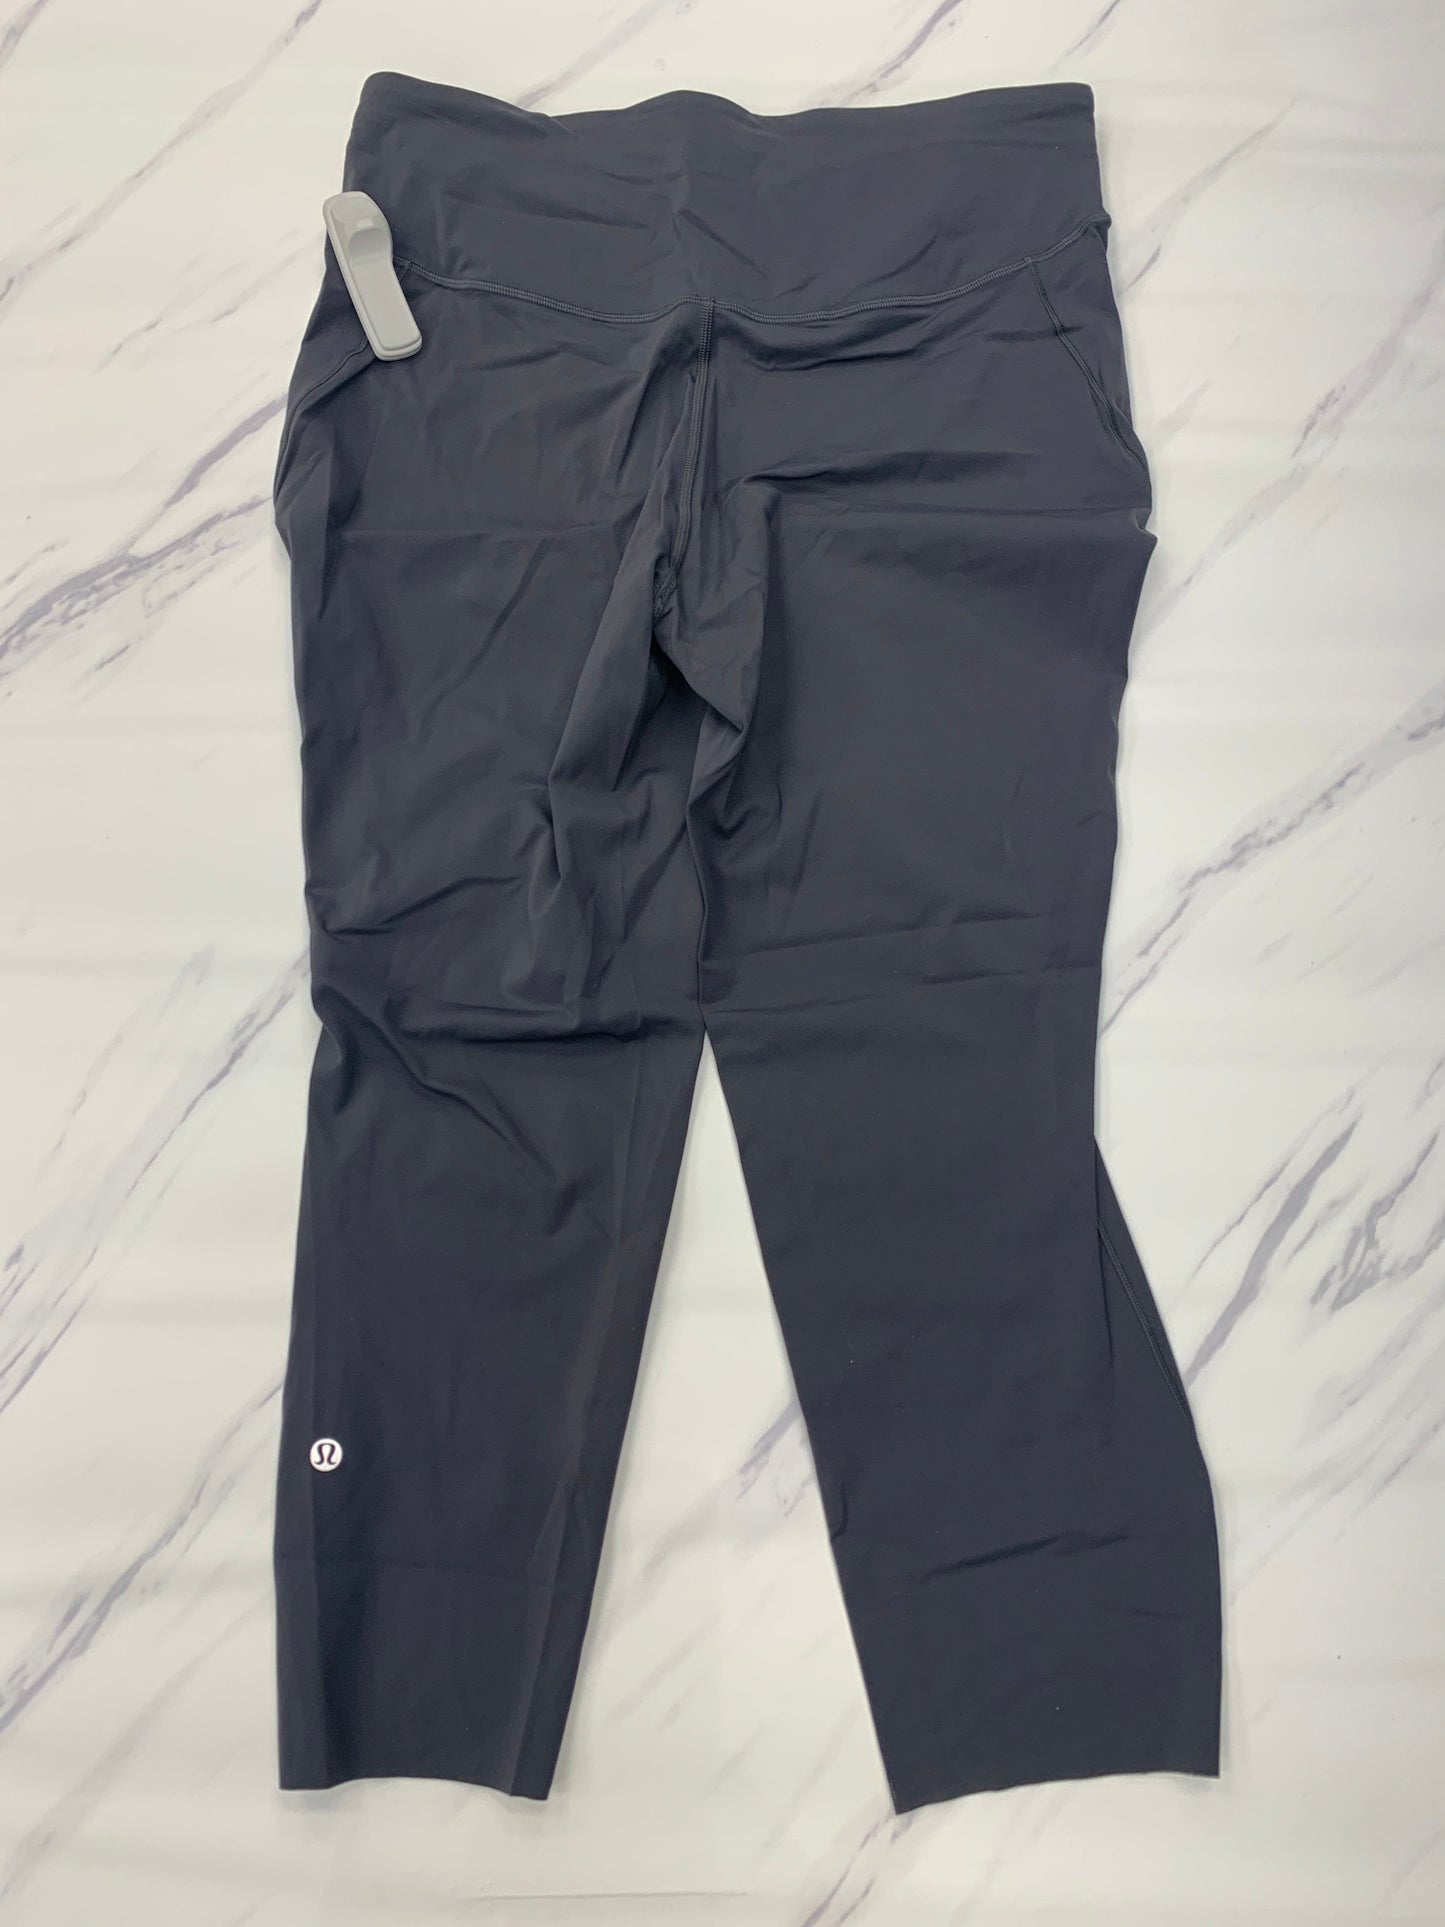 Grey Athletic Pants Lululemon, Size 14